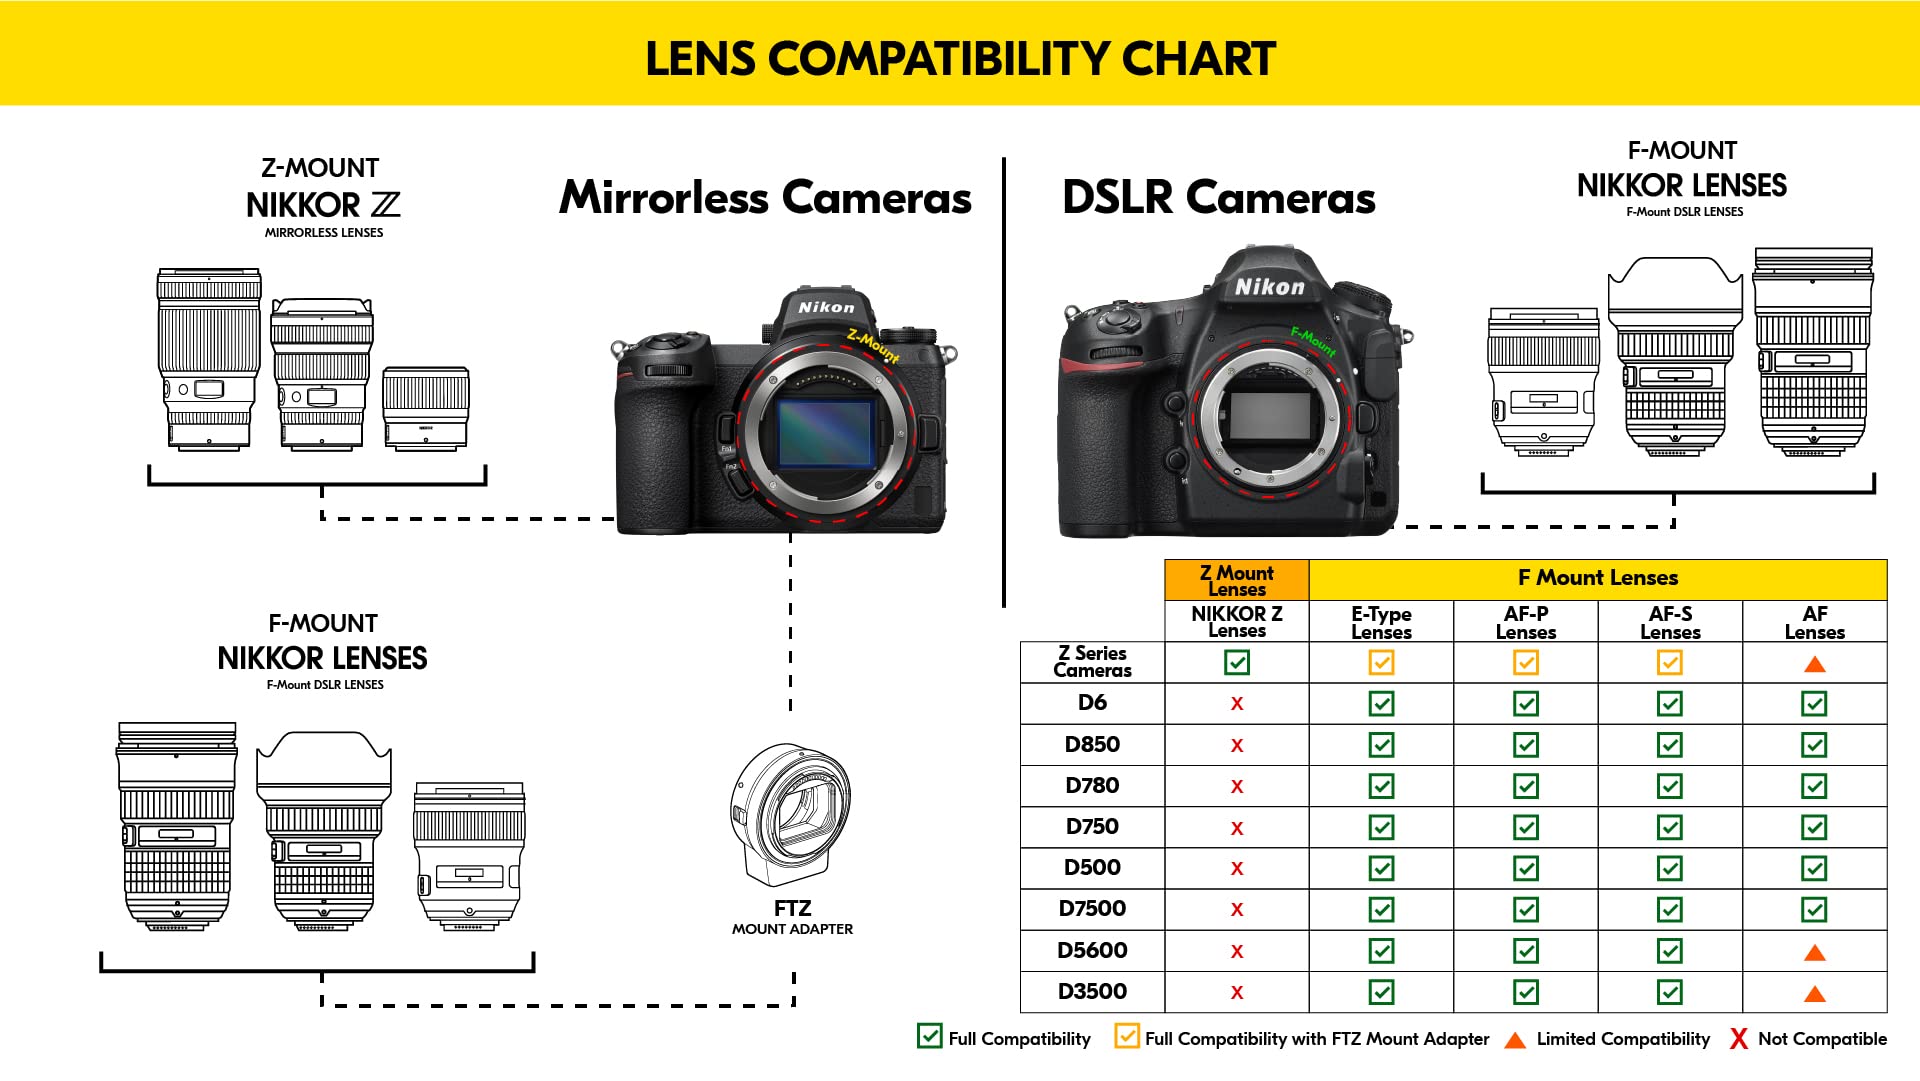 Nikon AF-S DX NIKKOR 16-85mm f/3.5-5.6G ED Vibration Reduction Zoom Lens with Auto Focus for Nikon DSLR Cameras